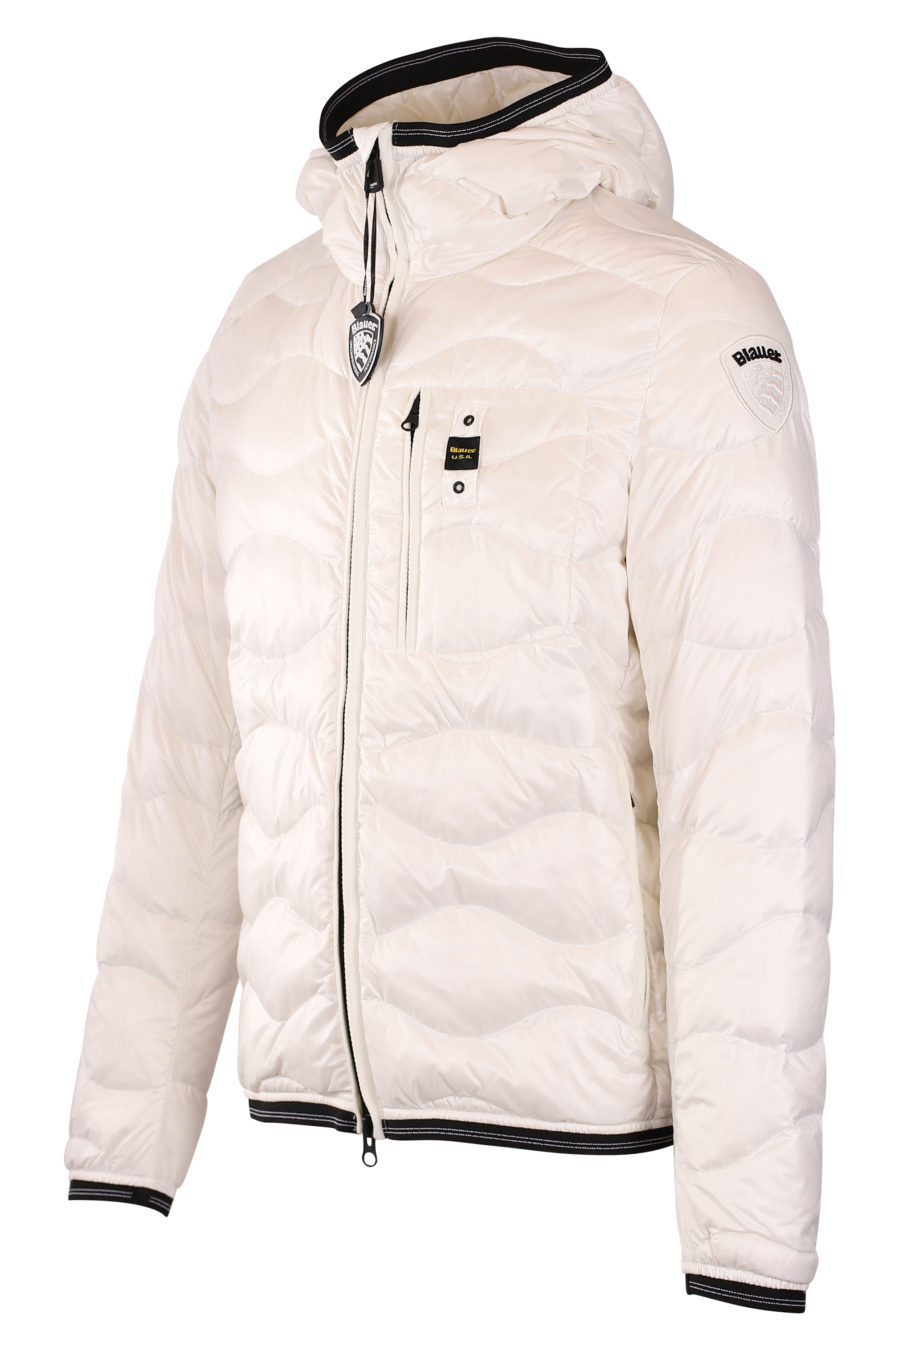 Weiße gewellte Jacke mit Kapuze - IMG 9415